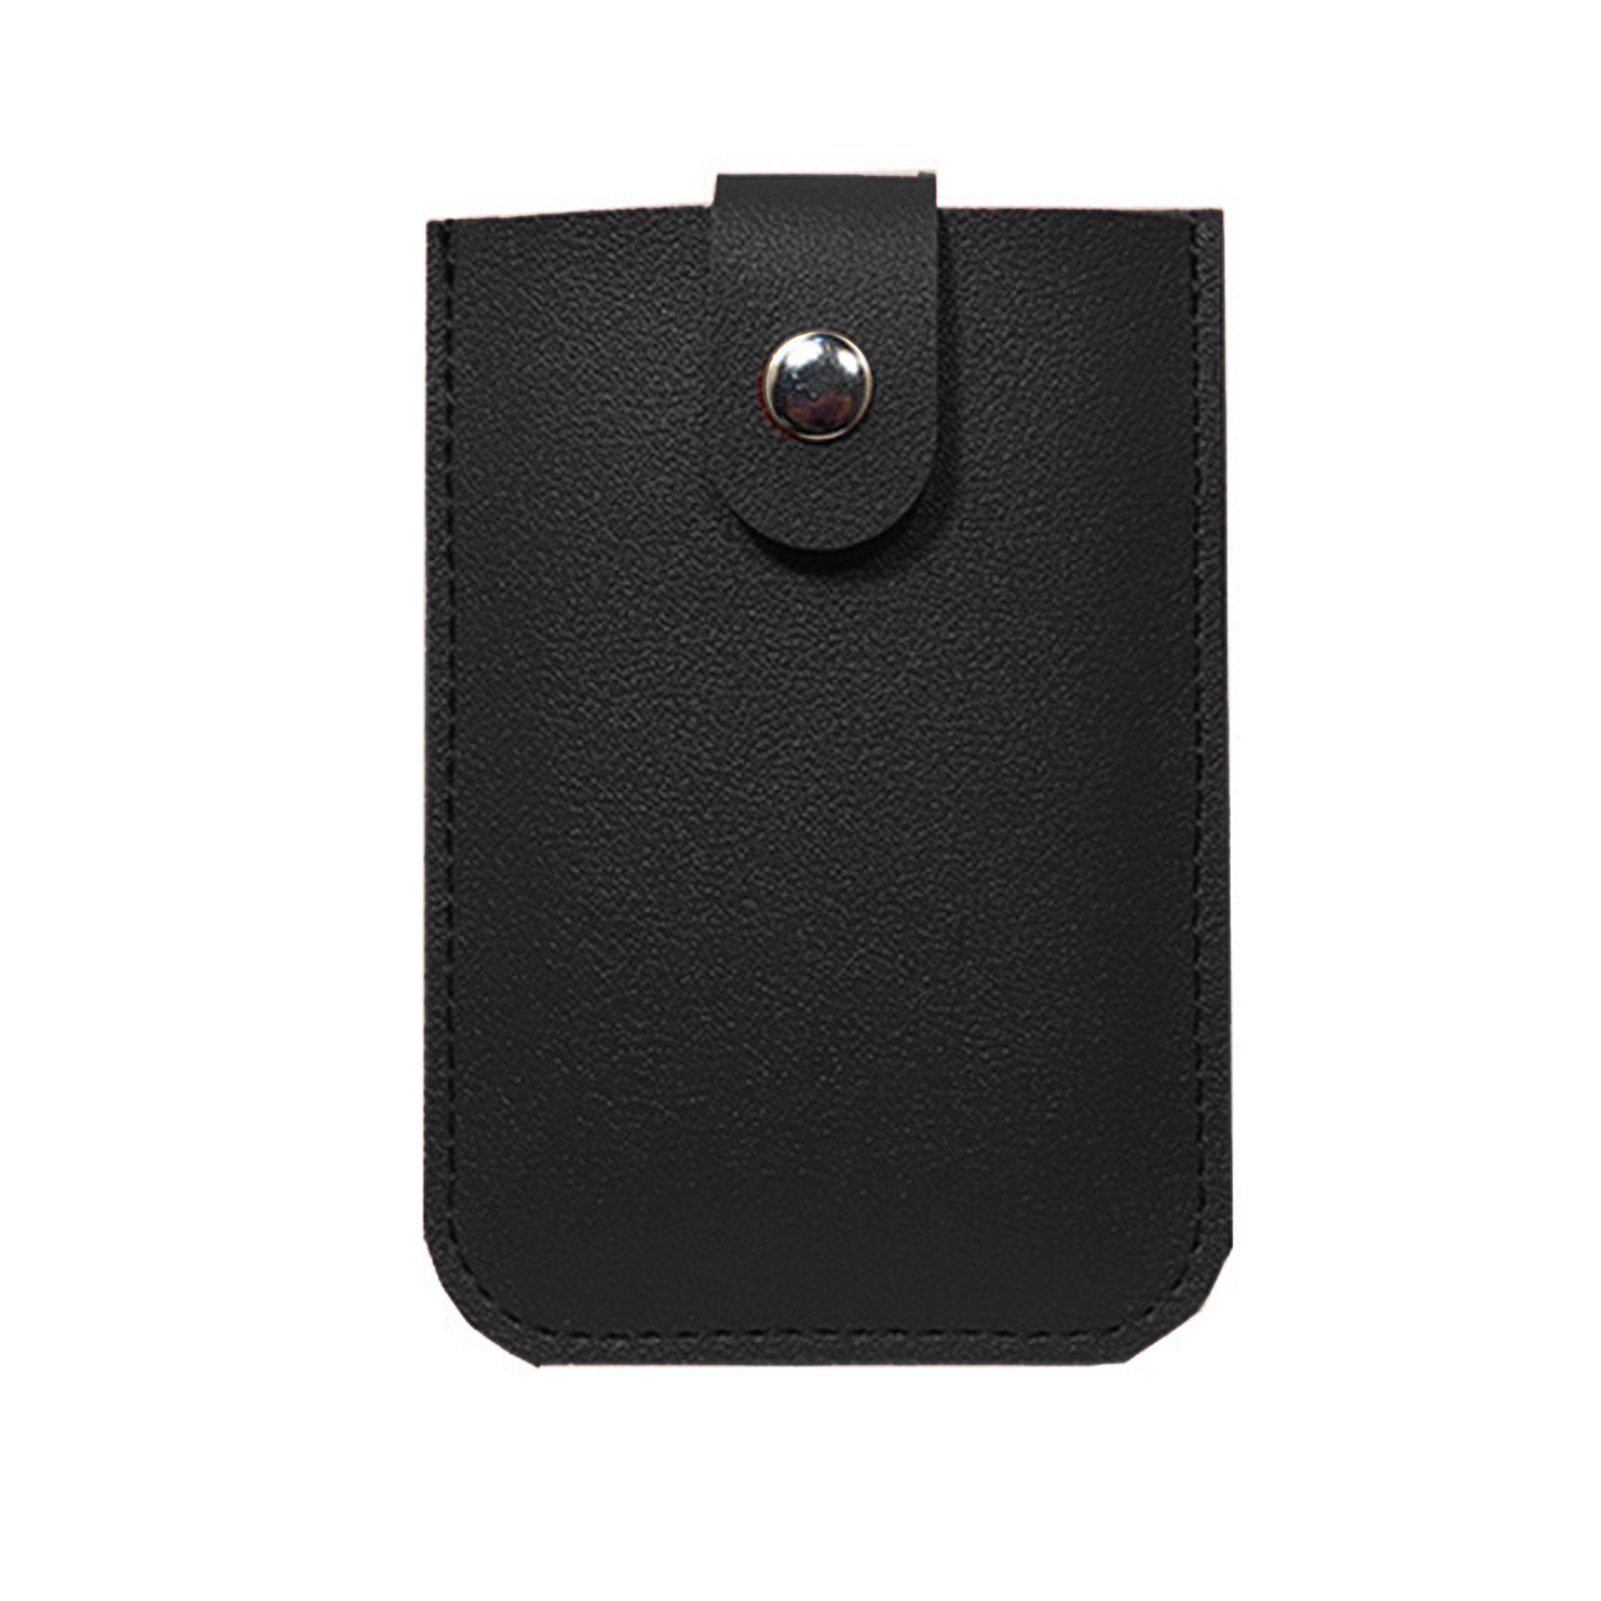 Blusmart Mini Geldbörse Ausziehbarer Kartenhalter Mit 6 Fächern, Tragbares black